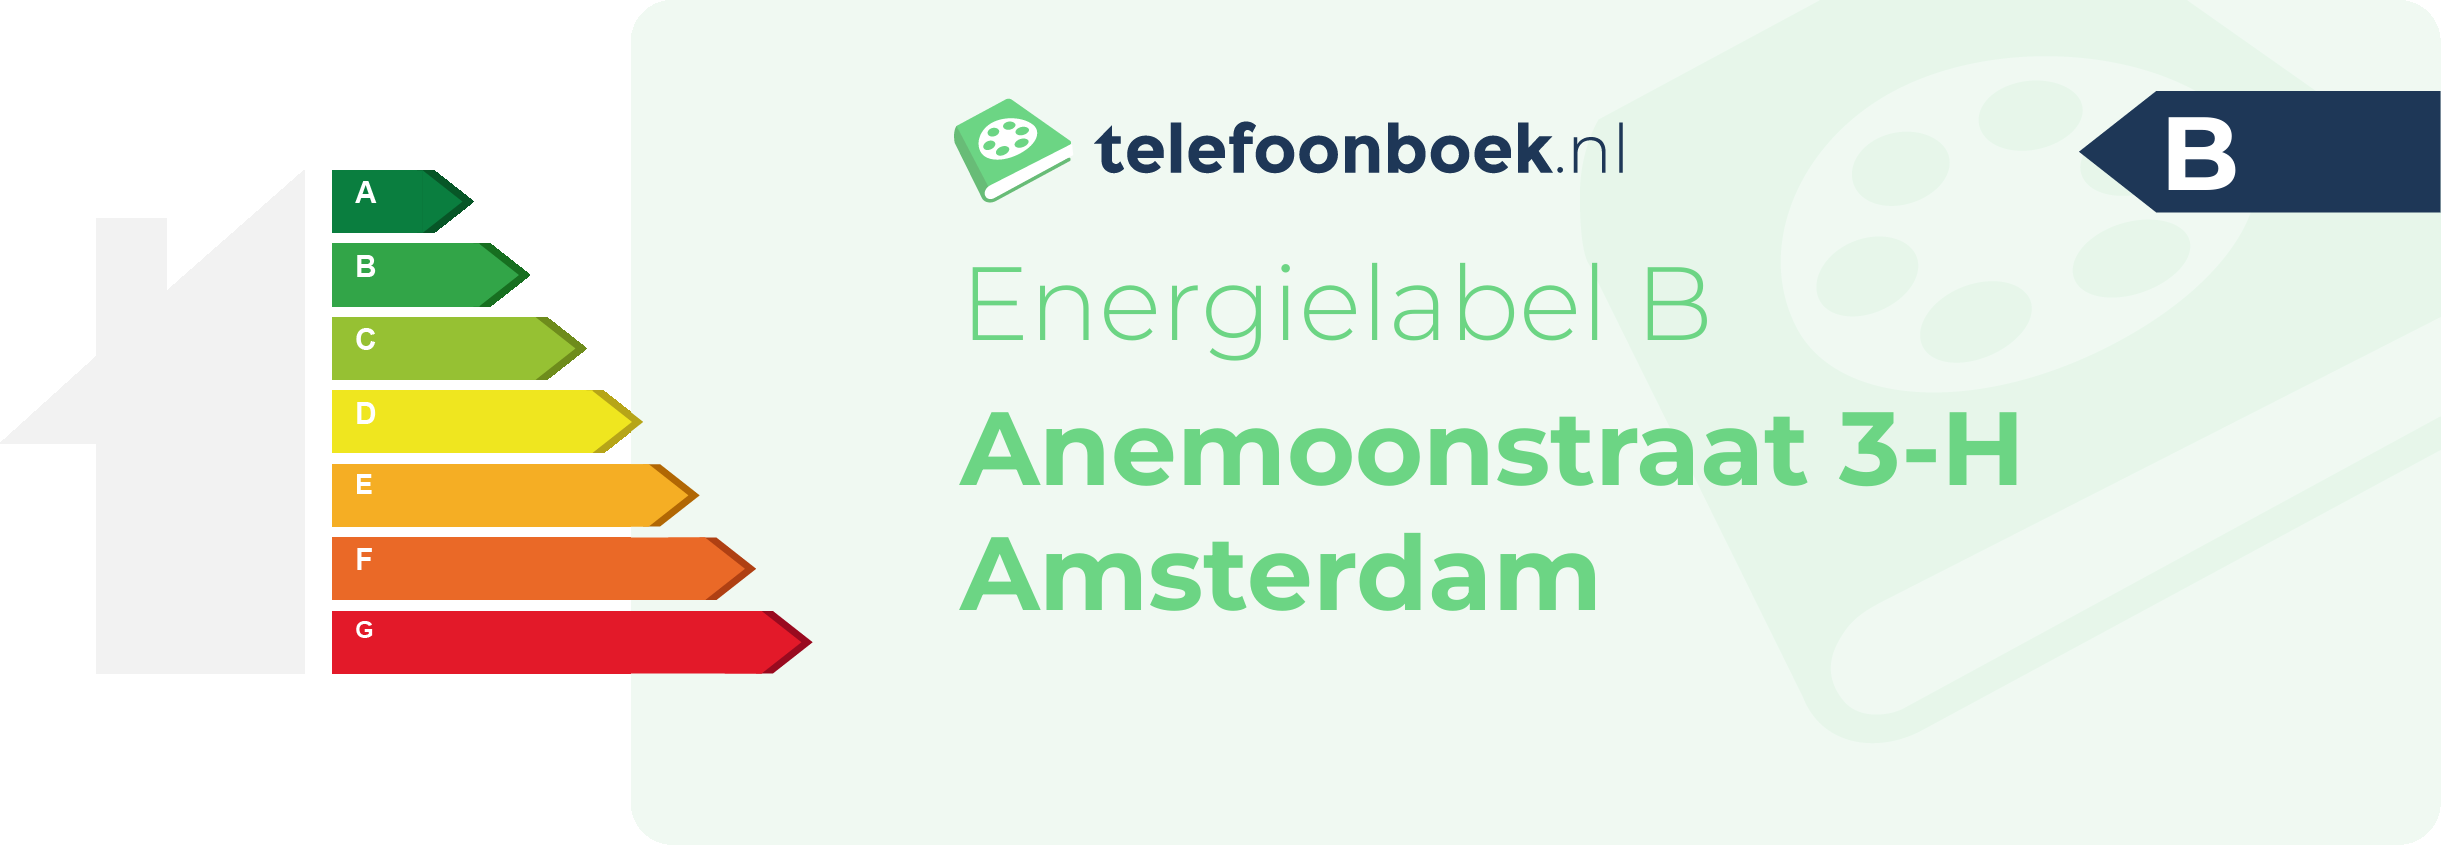 Energielabel Anemoonstraat 3-H Amsterdam